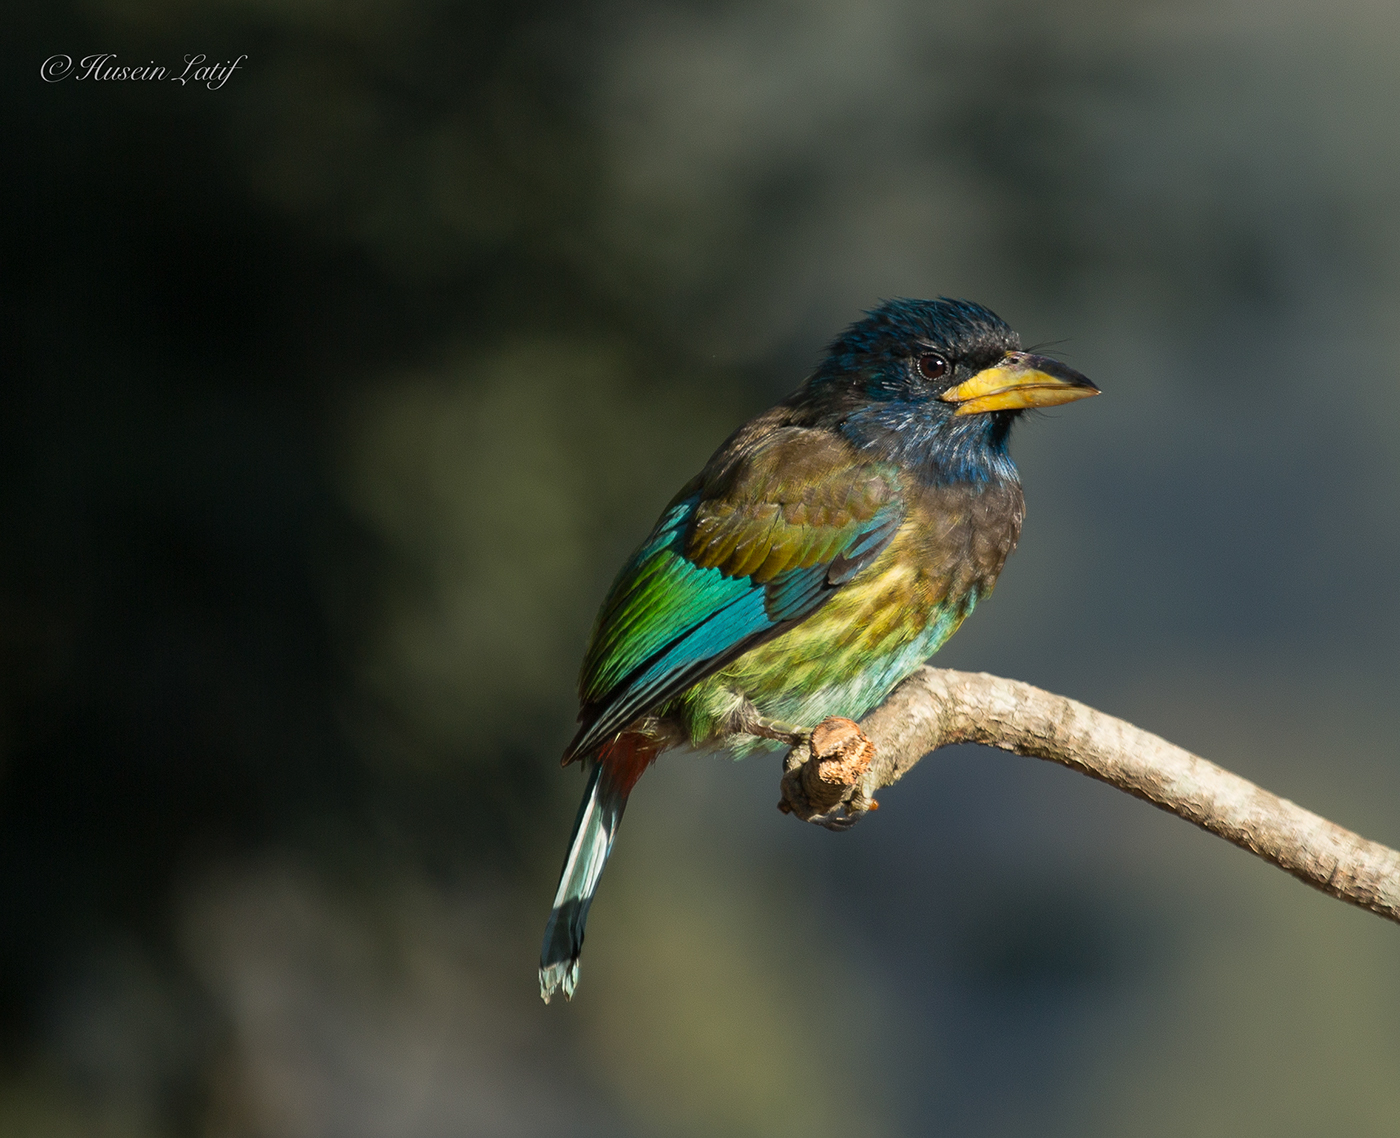 himalayas Bird Photography bird birding avian digital Nature wildlife India asia